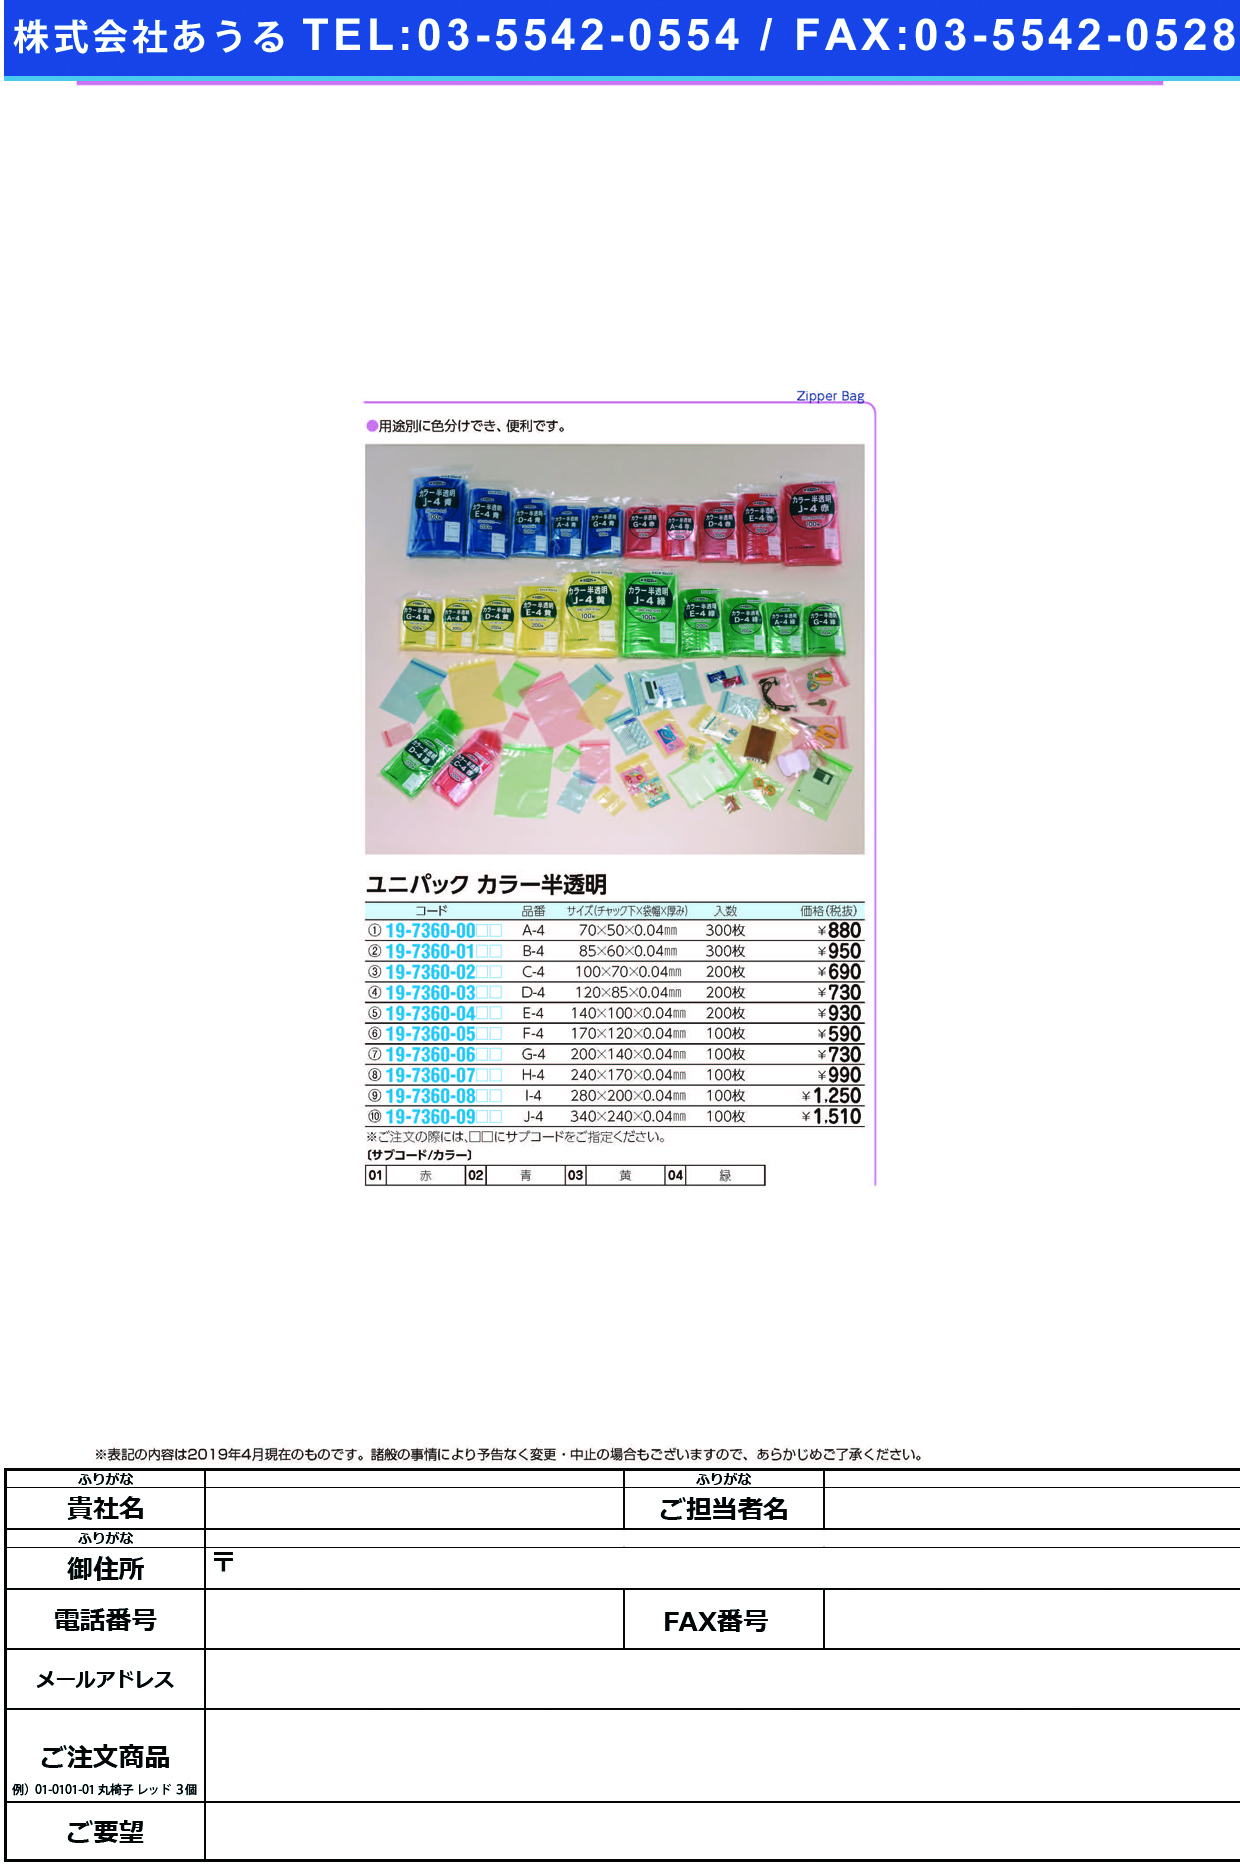 (19-7360-09)ユニパックカラー半透明 J-4(100ﾏｲｲﾘ) ﾕﾆﾊﾟｯｸｶﾗｰﾊﾝﾄｳﾒｲ 赤【1袋単位】【2019年カタログ商品】